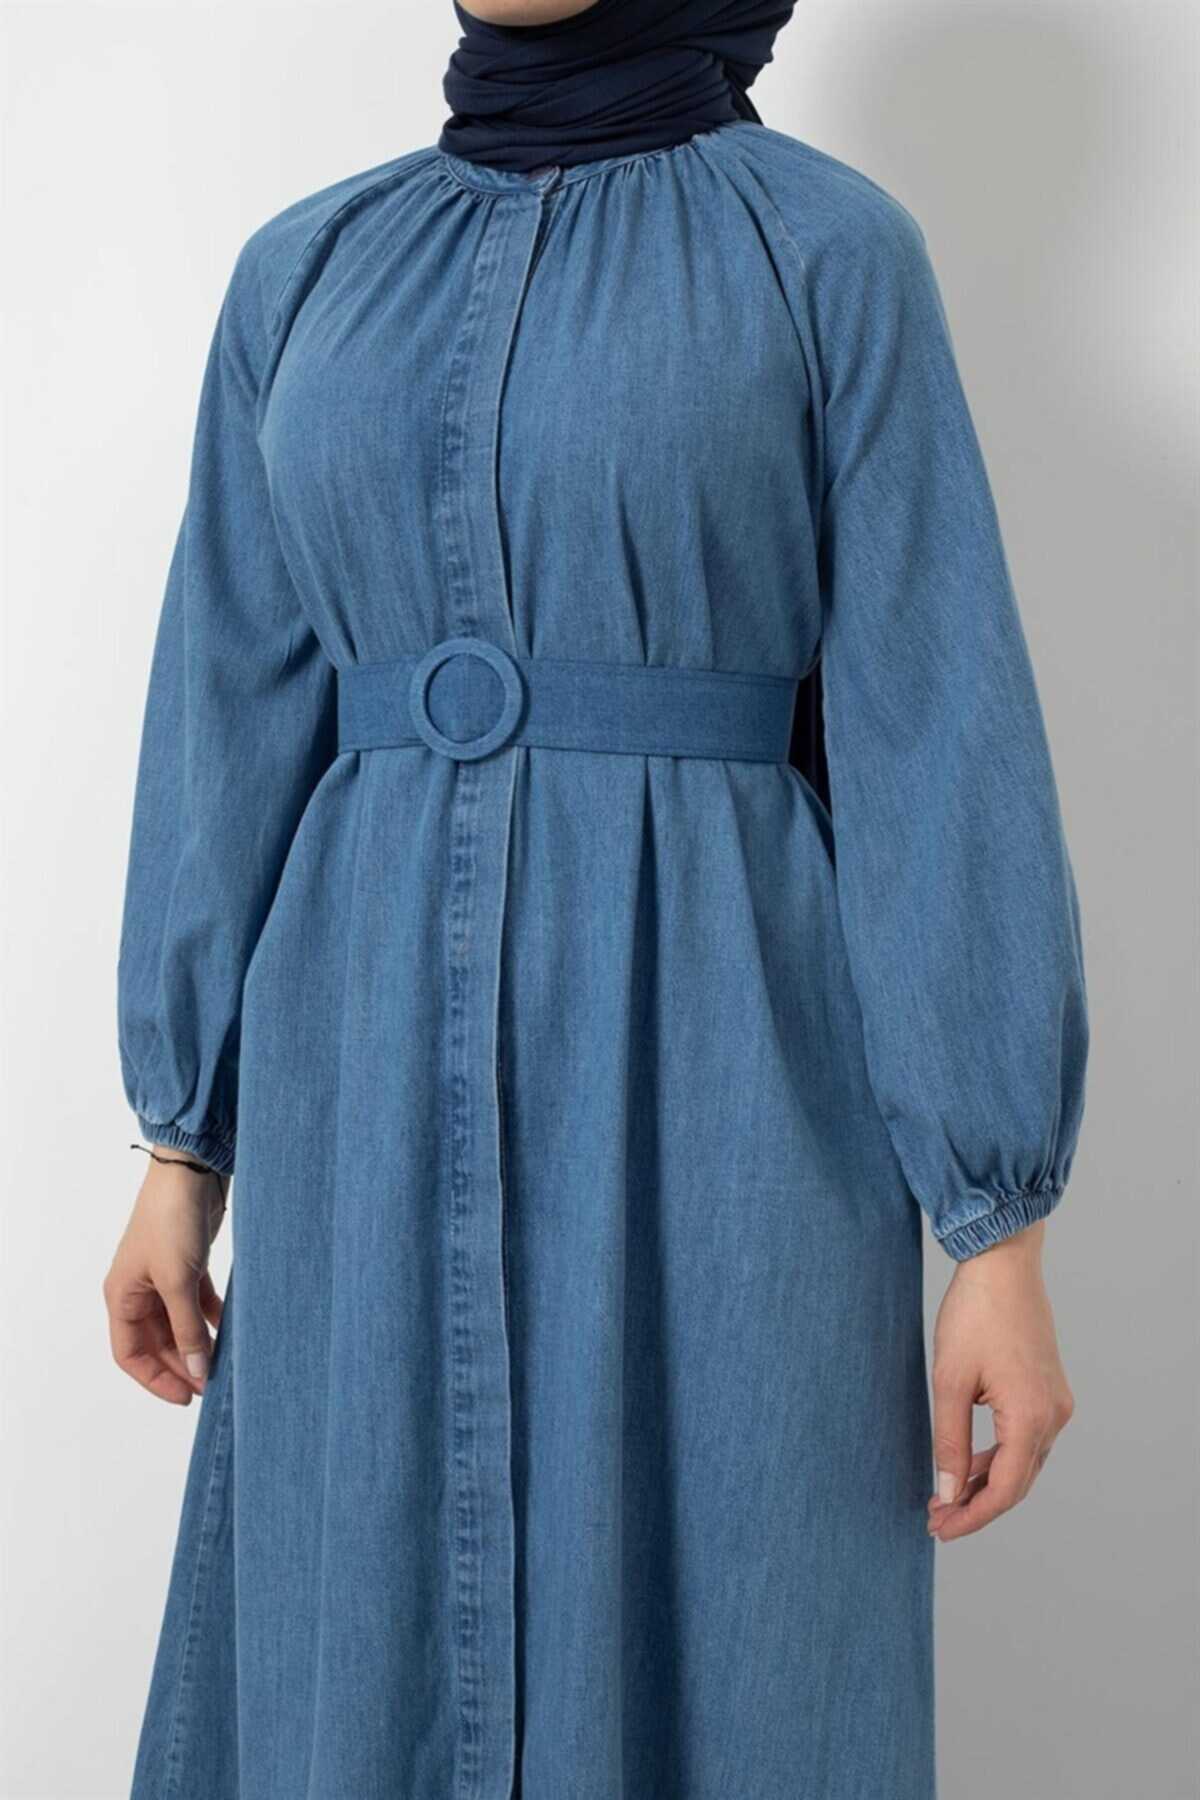 مانتو زنانه جین یقه کش کمربند دار آبی برند moda